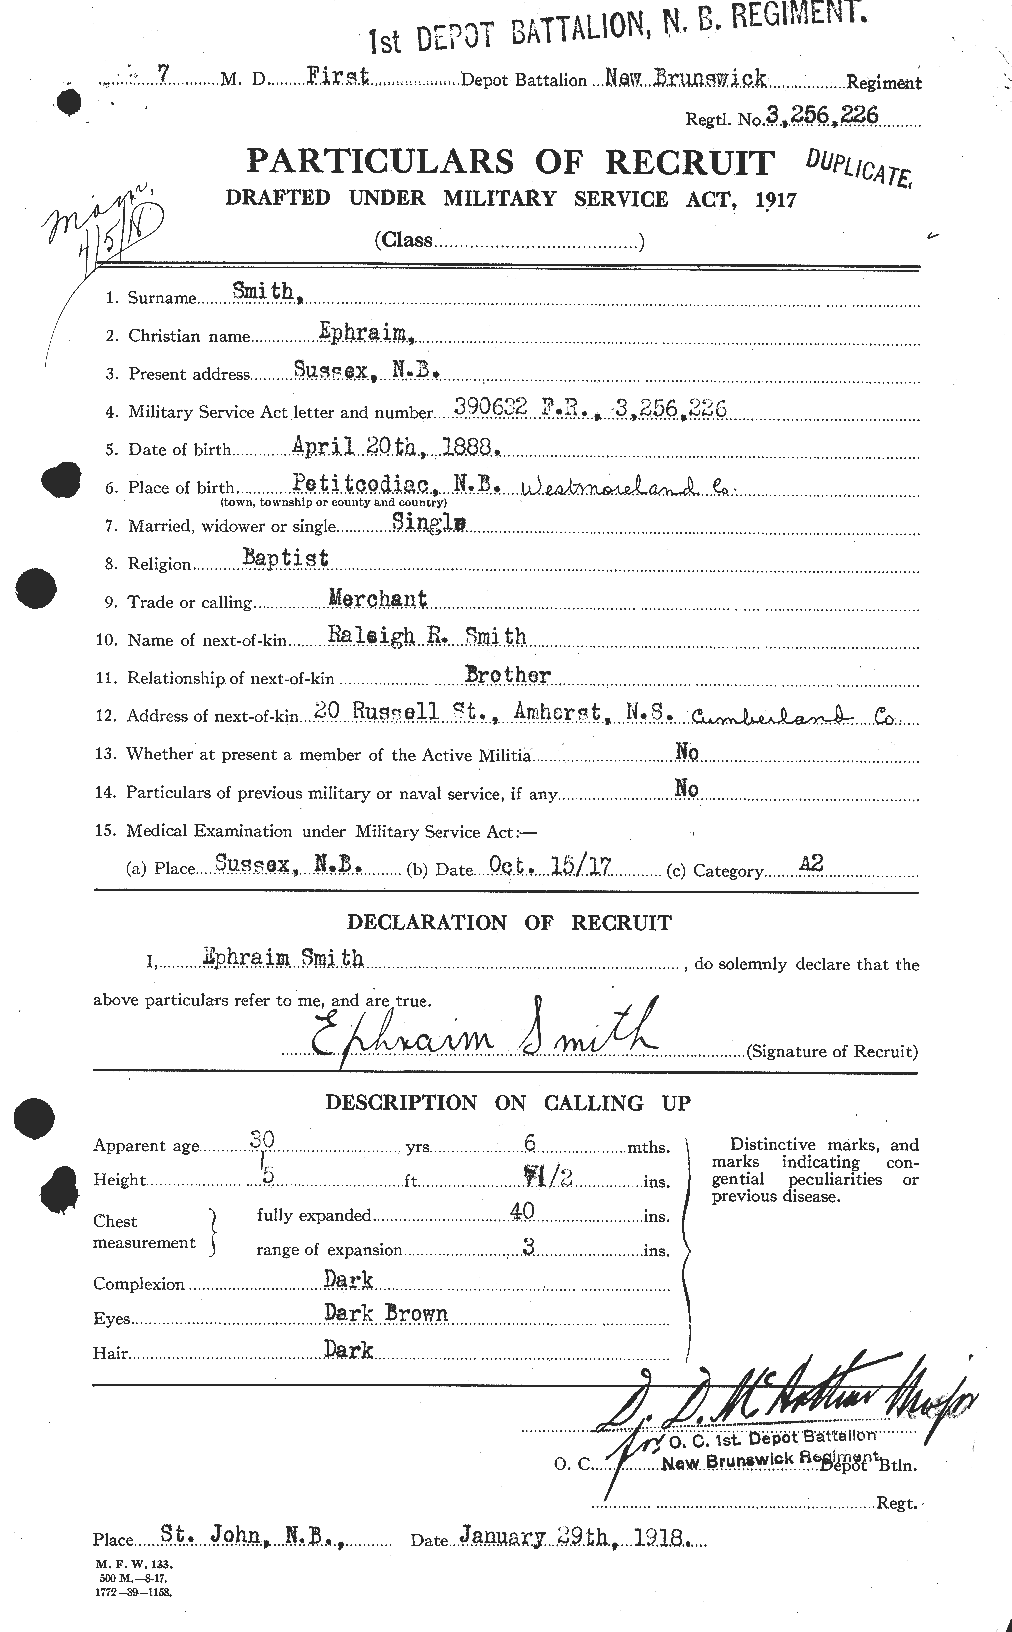 Dossiers du Personnel de la Première Guerre mondiale - CEC 621127a